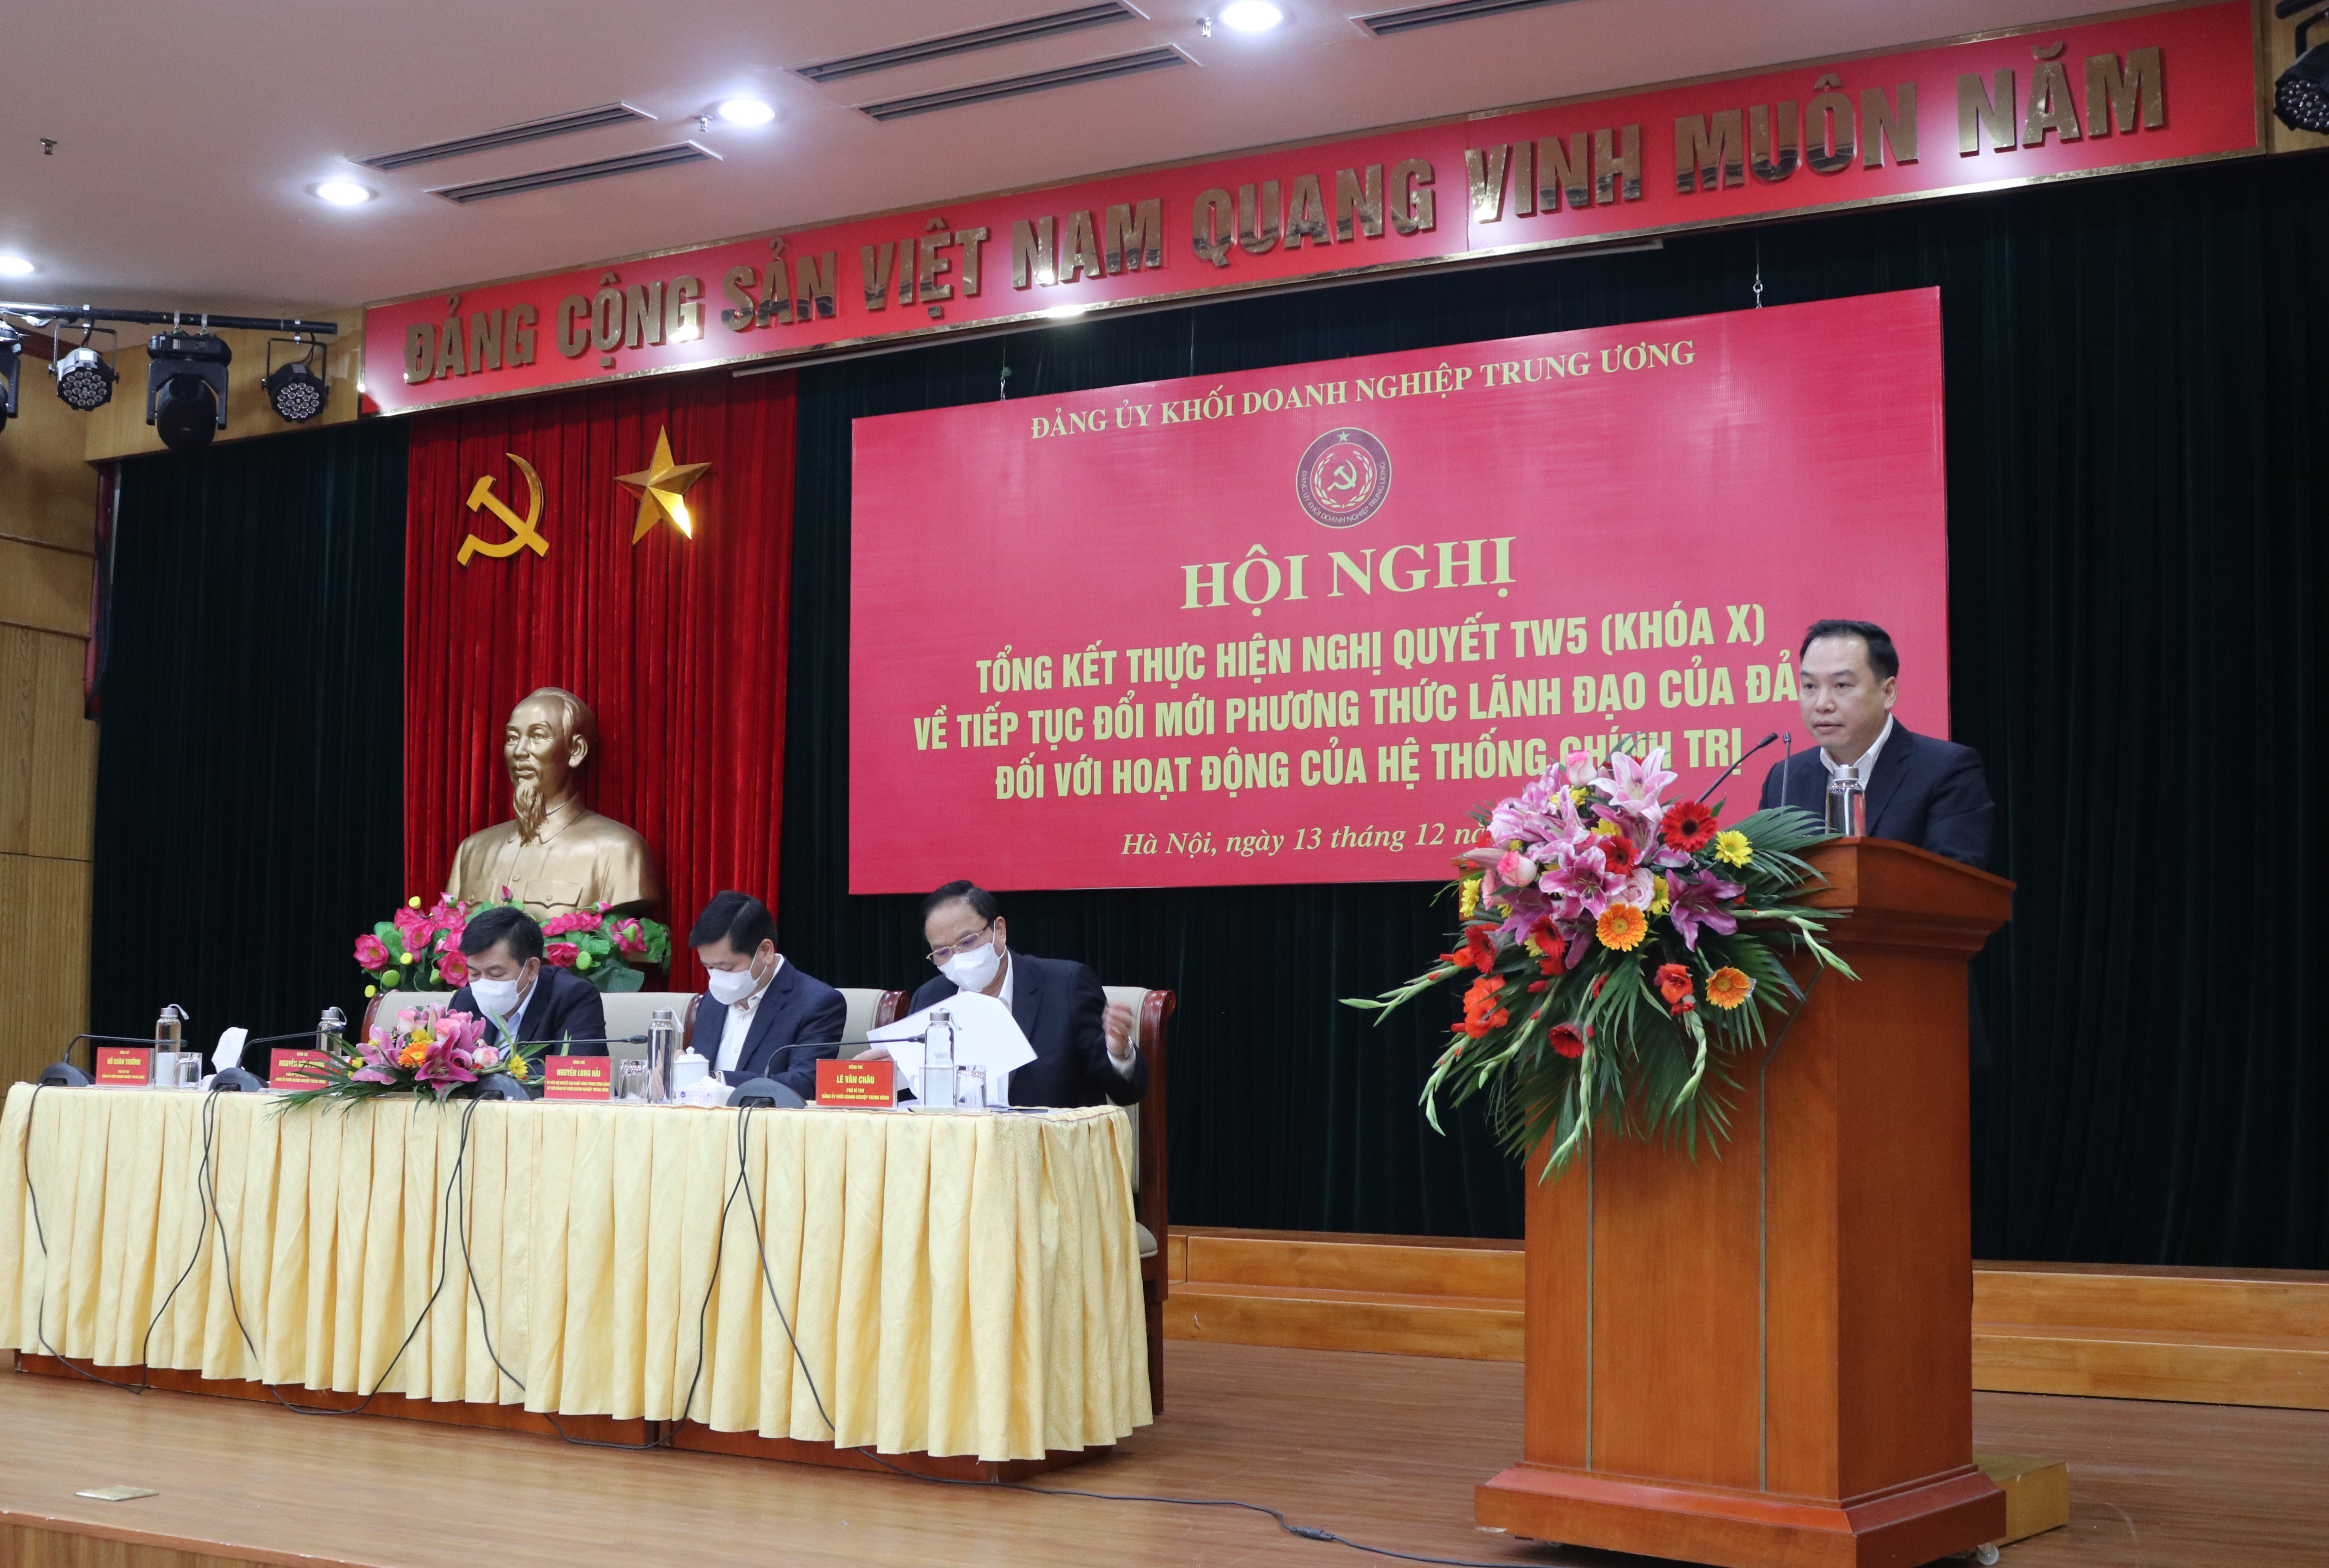 Đồng chí Hồ Xuân Trường, Phó Bí thư Đảng ủy Khối trình bầy tóm tắt báo cáo tại Hội nghị .